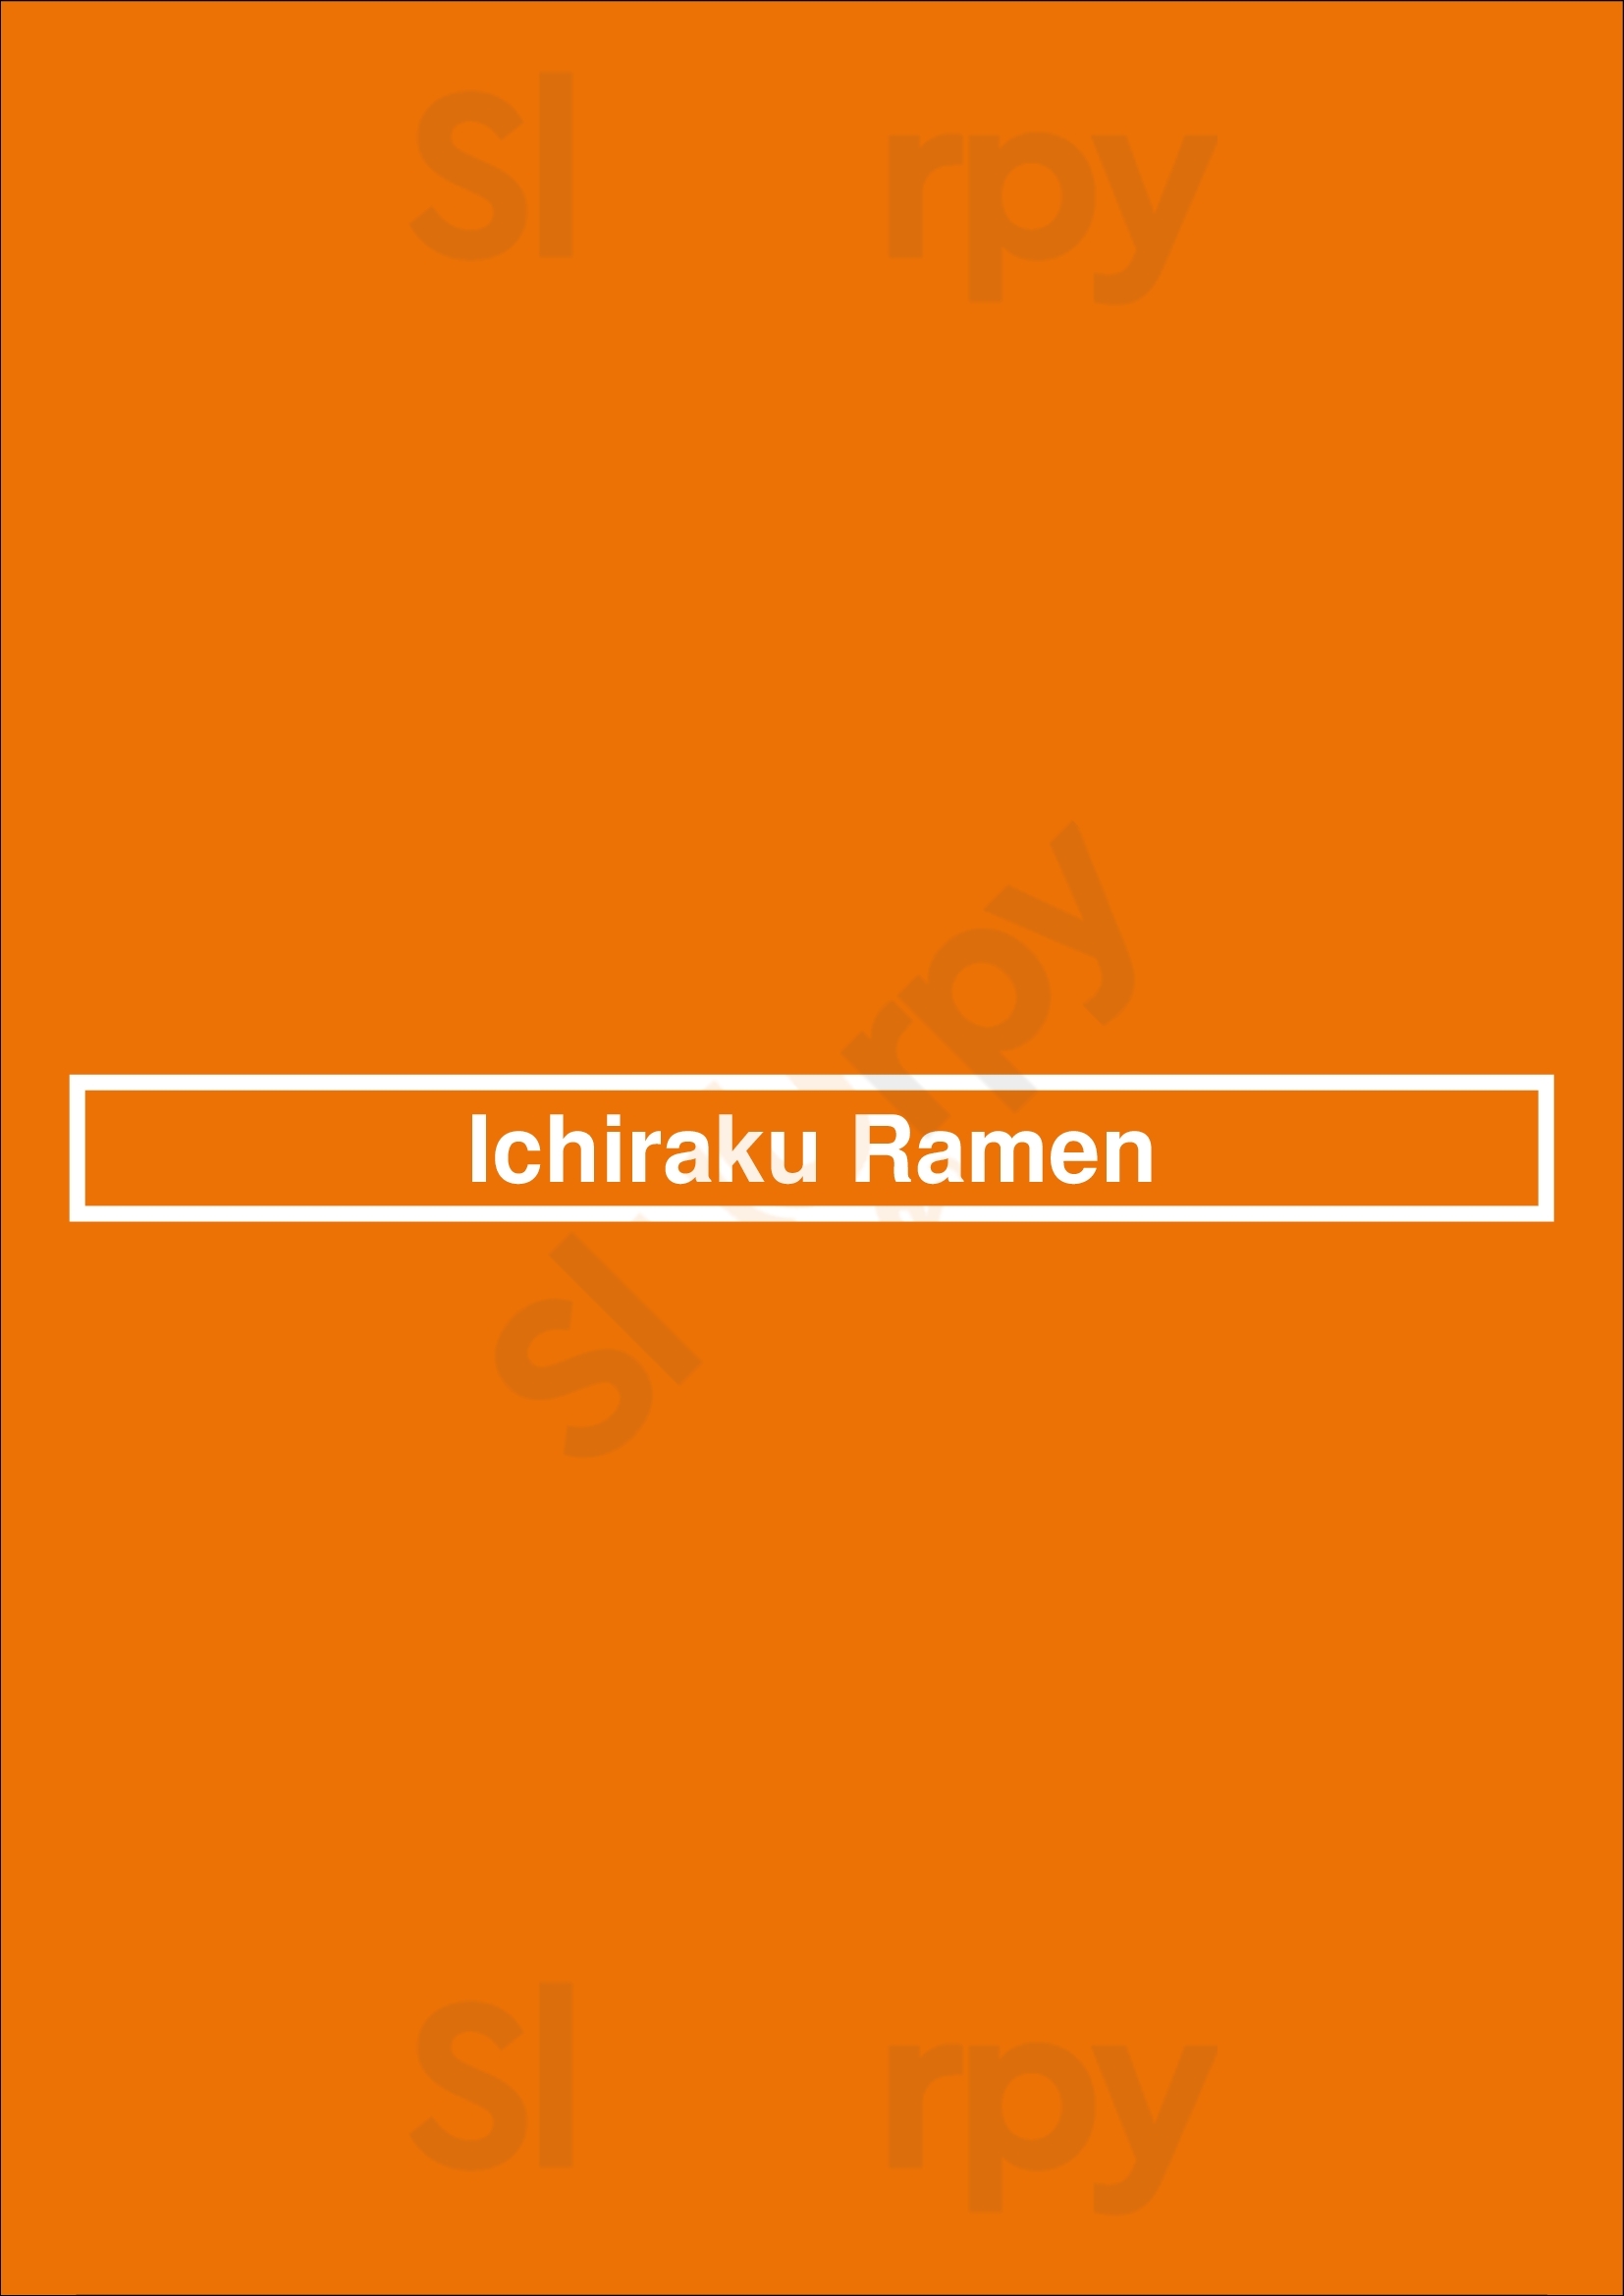 Ichiraku Ramen San Francisco Menu - 1